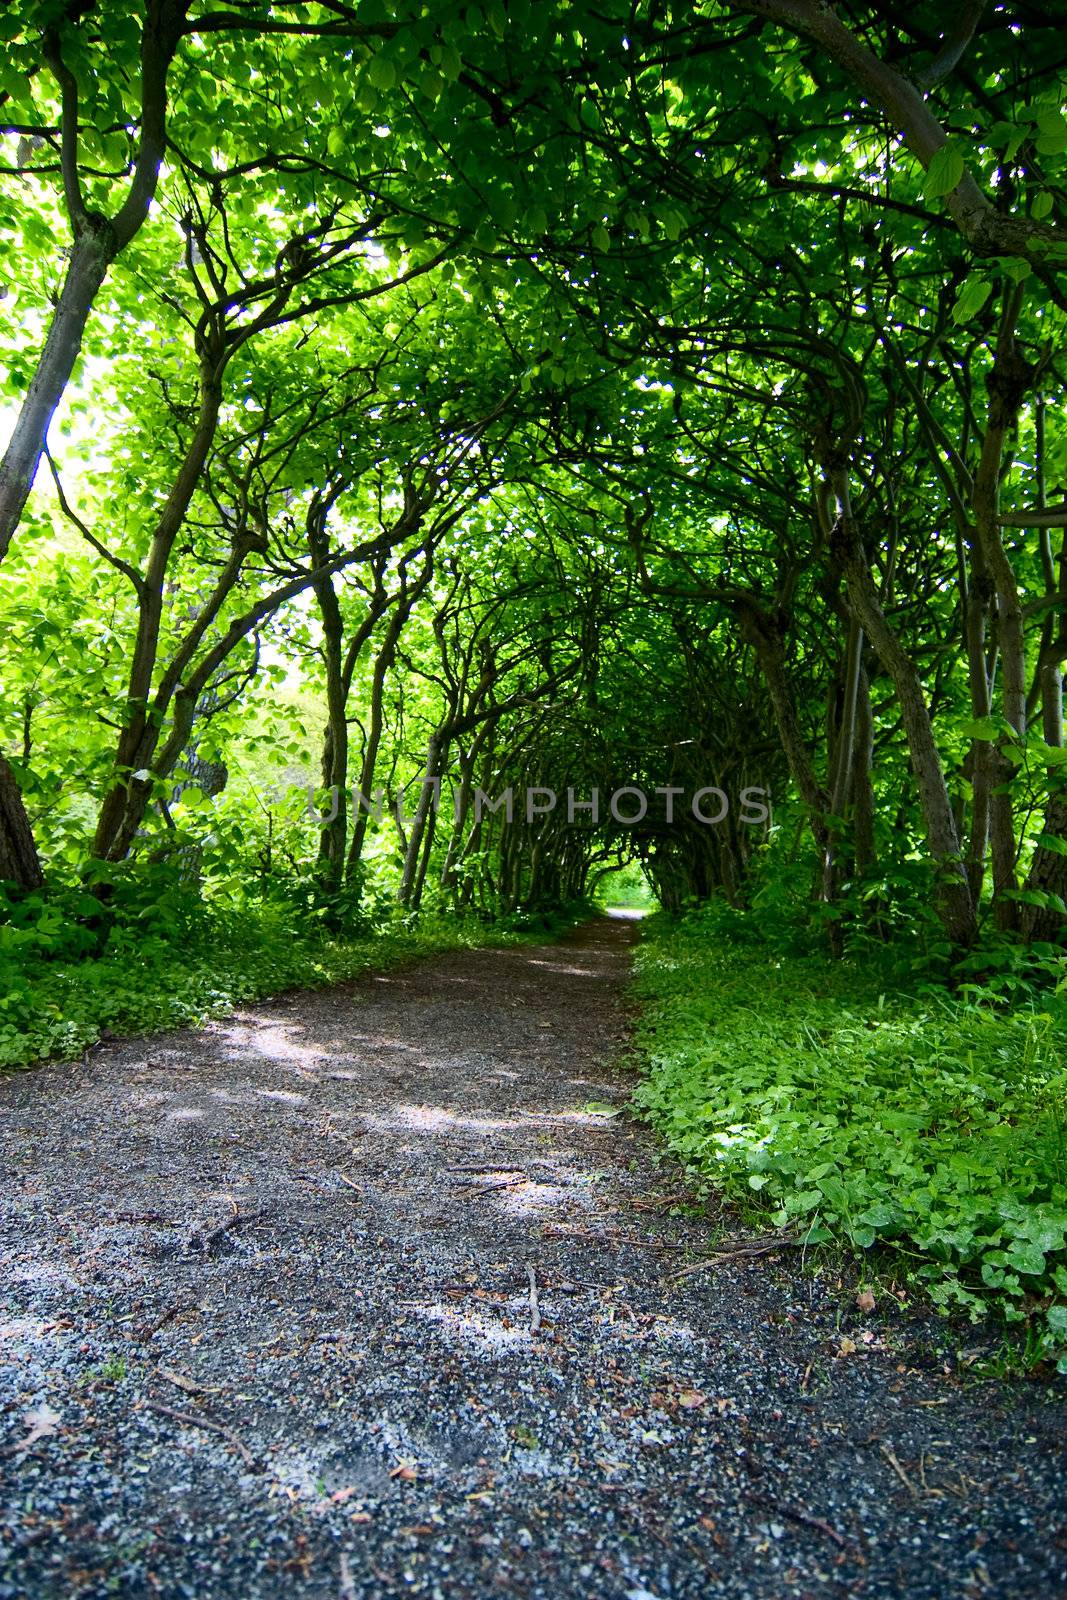 A mystical path through trees in a garden